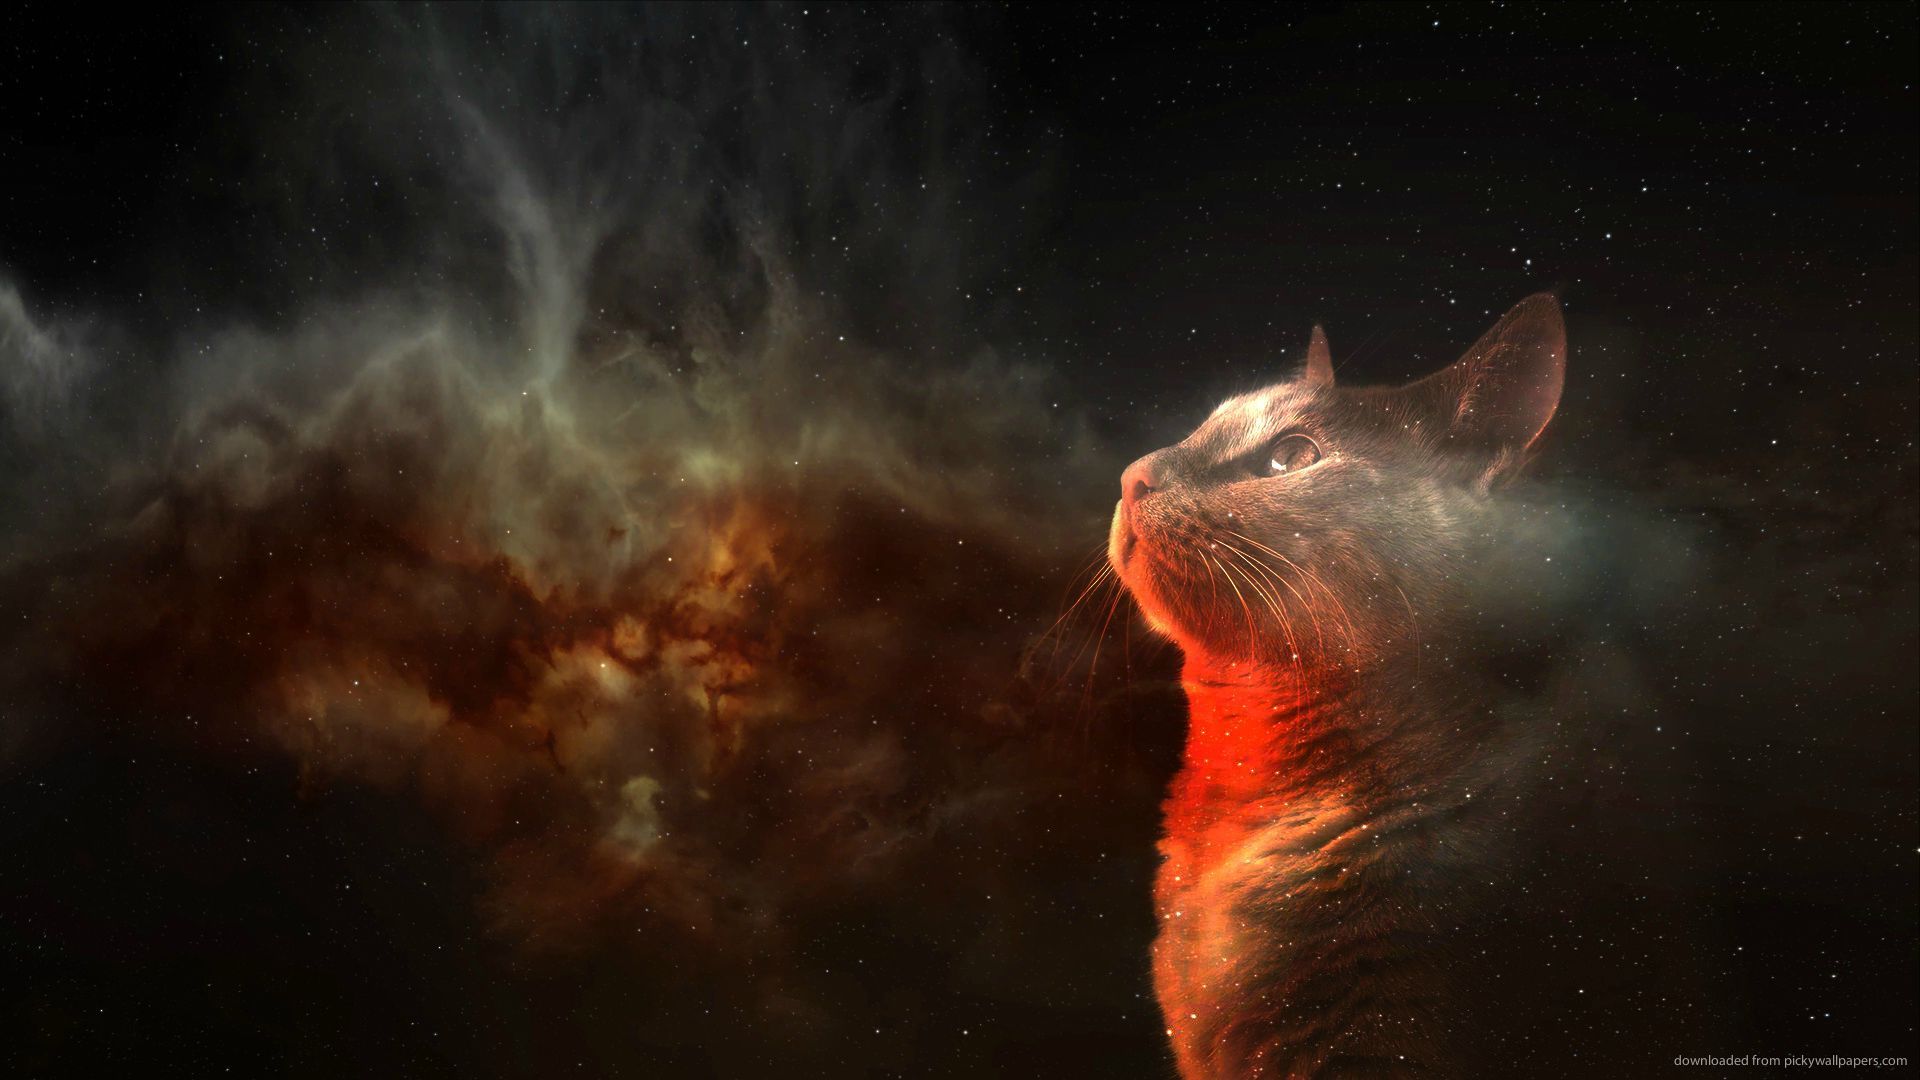 Space Cat Wallpaper - WallpaperSafari